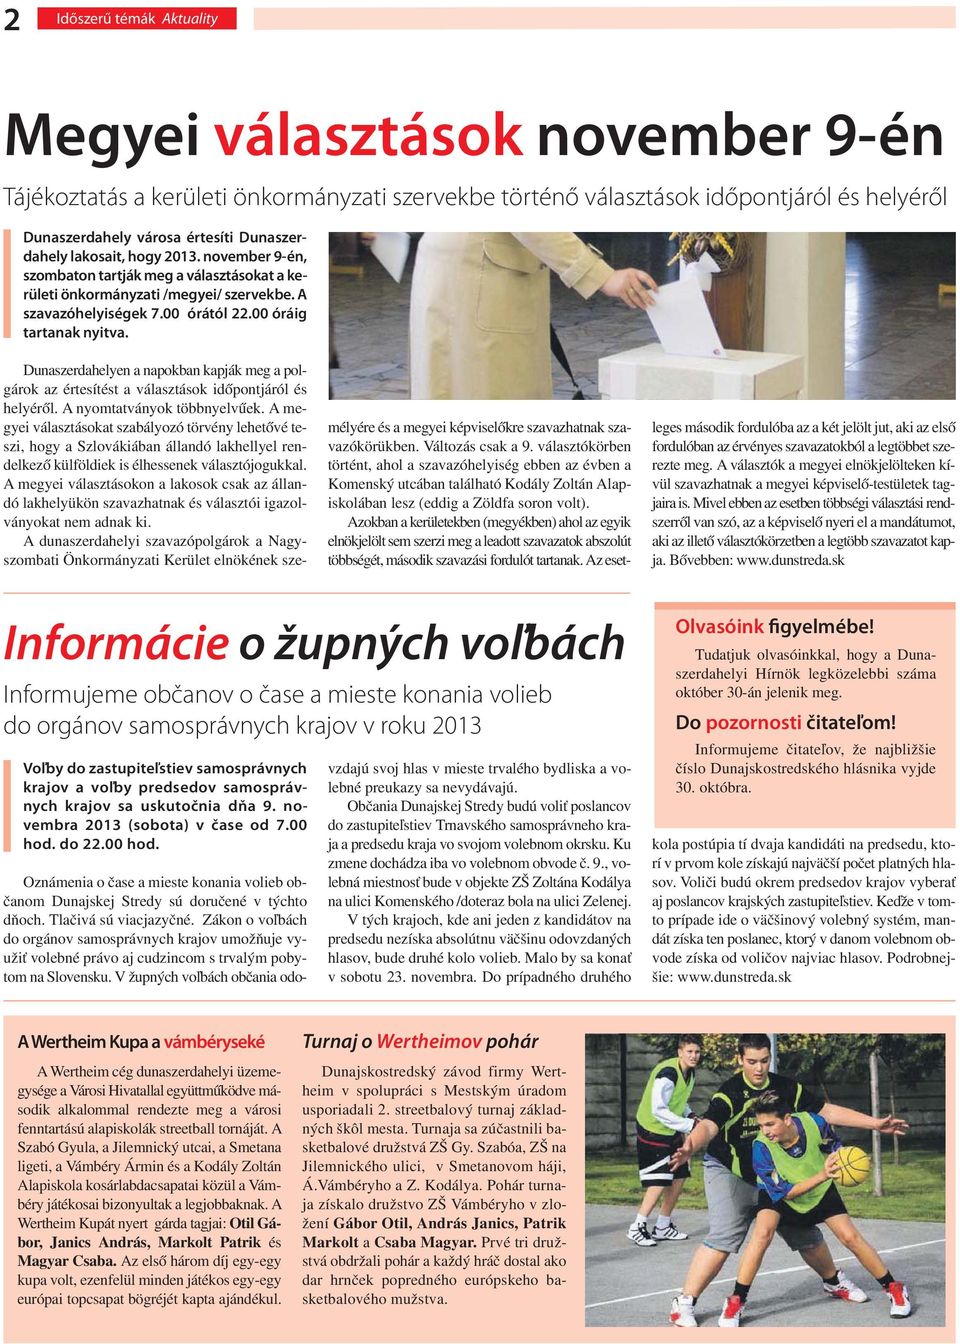 Dunaszerdahelyen a napokban kapják meg a polgárok az értesítést a választások időpontjáról és helyéről. A nyomtatványok többnyelvűek.